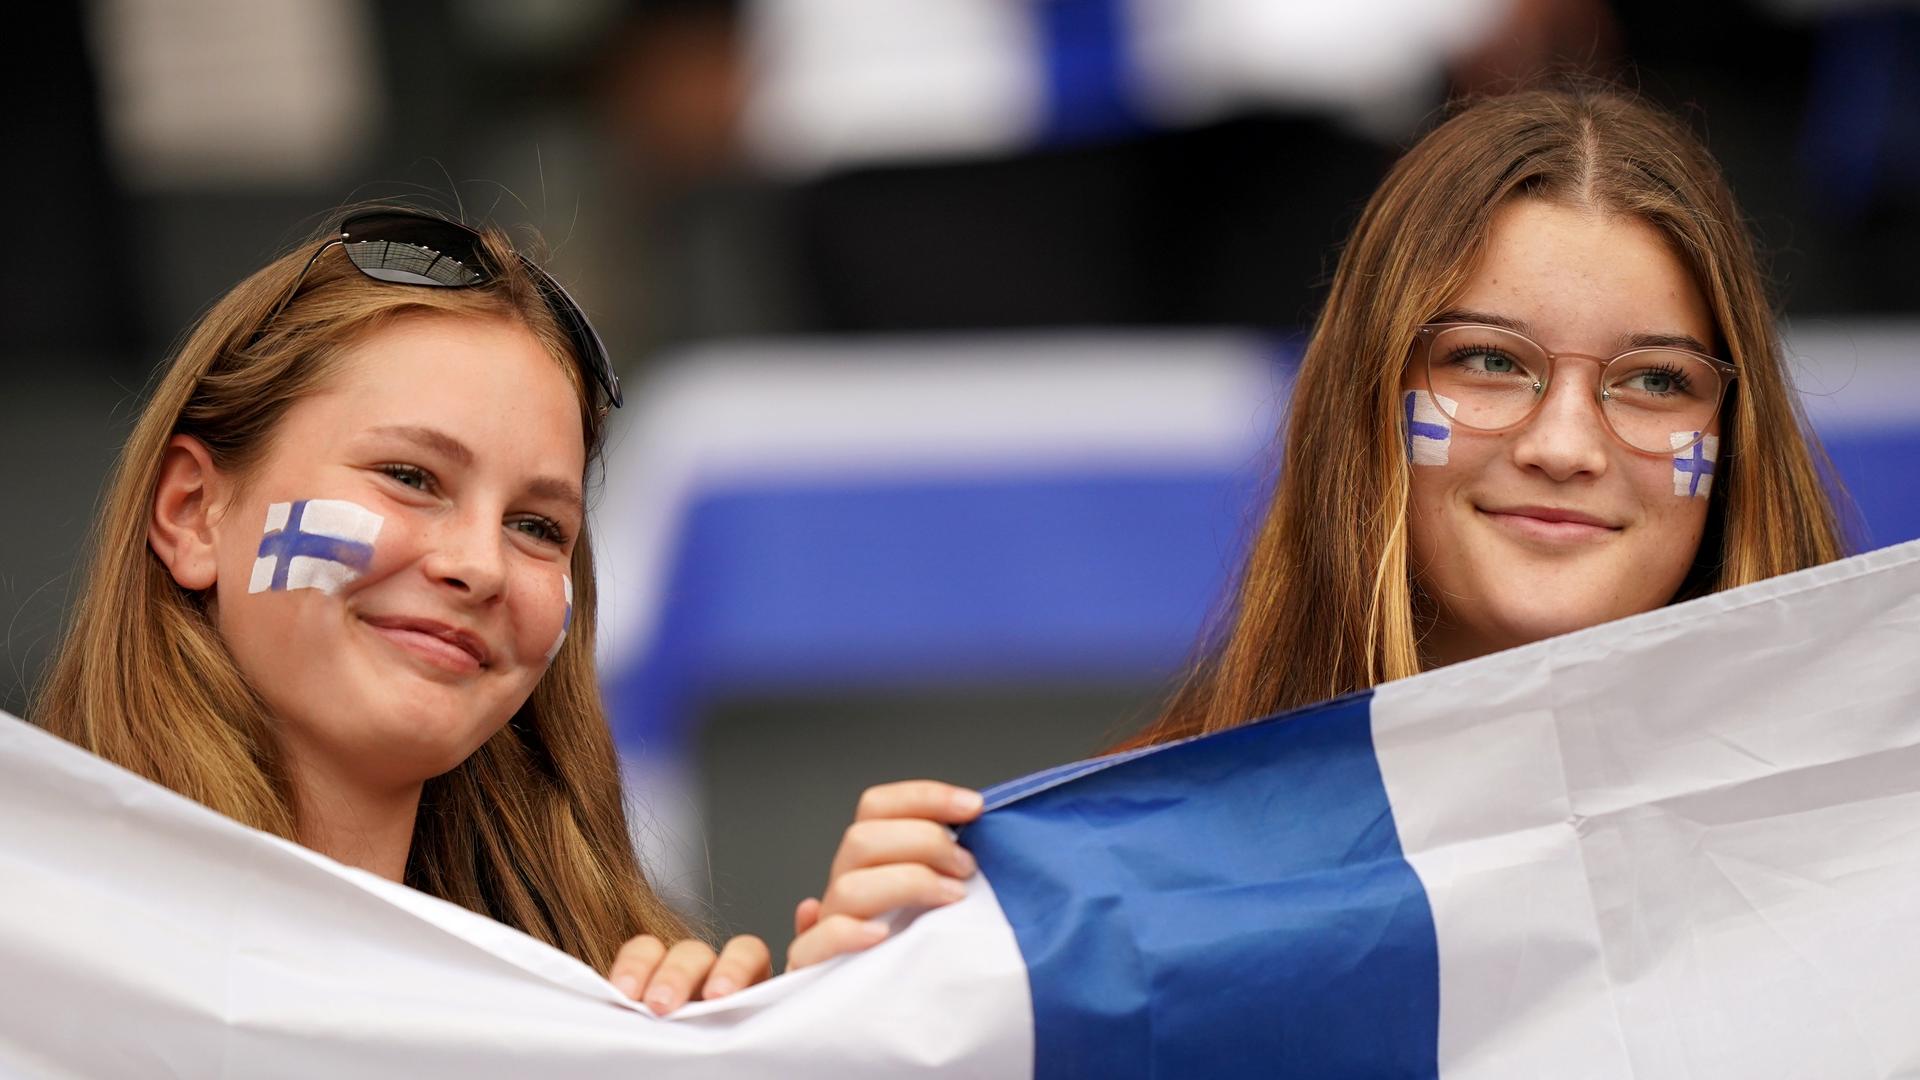 Zwei Finninnen lächeln während eines Fußballspiels. Sie halten eine Finnlad-Flagge und tragen jeweils geschminkte Landesflaggen auf ihren Wangen.